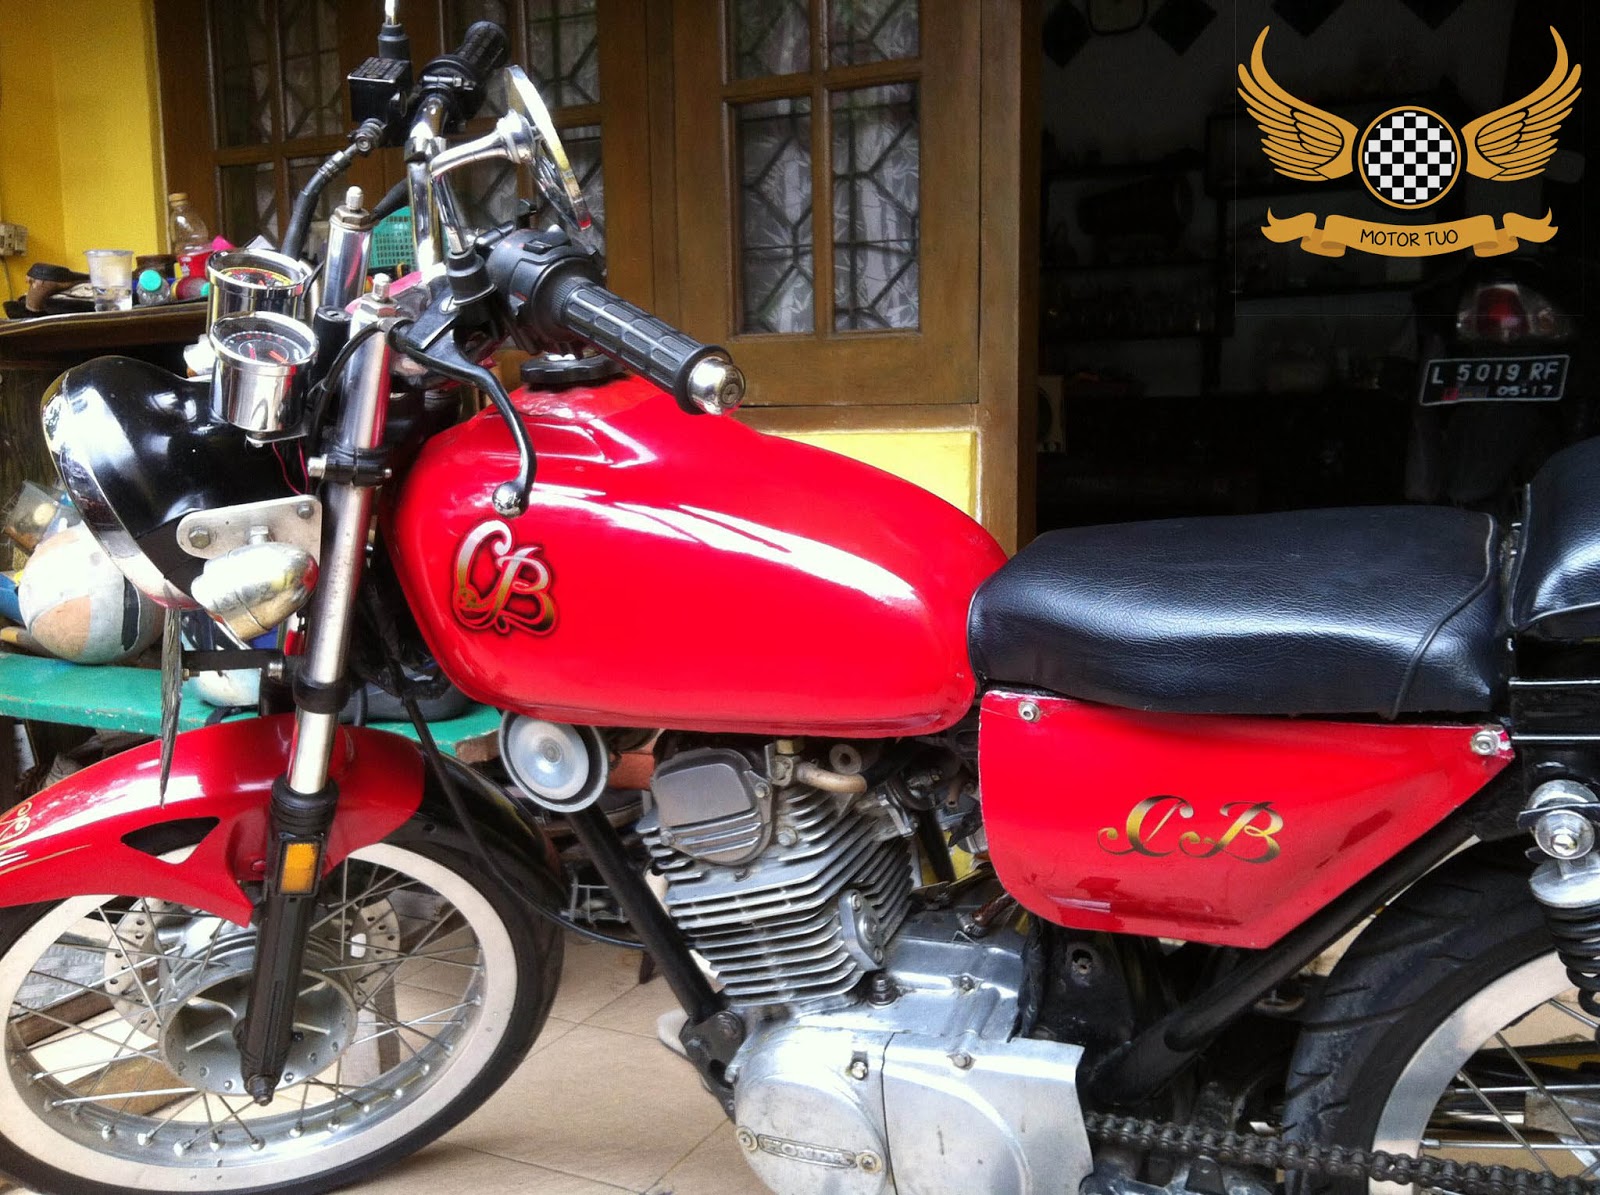 Modifikasi Klasik Honda CB Merah Unik Motor Tuo